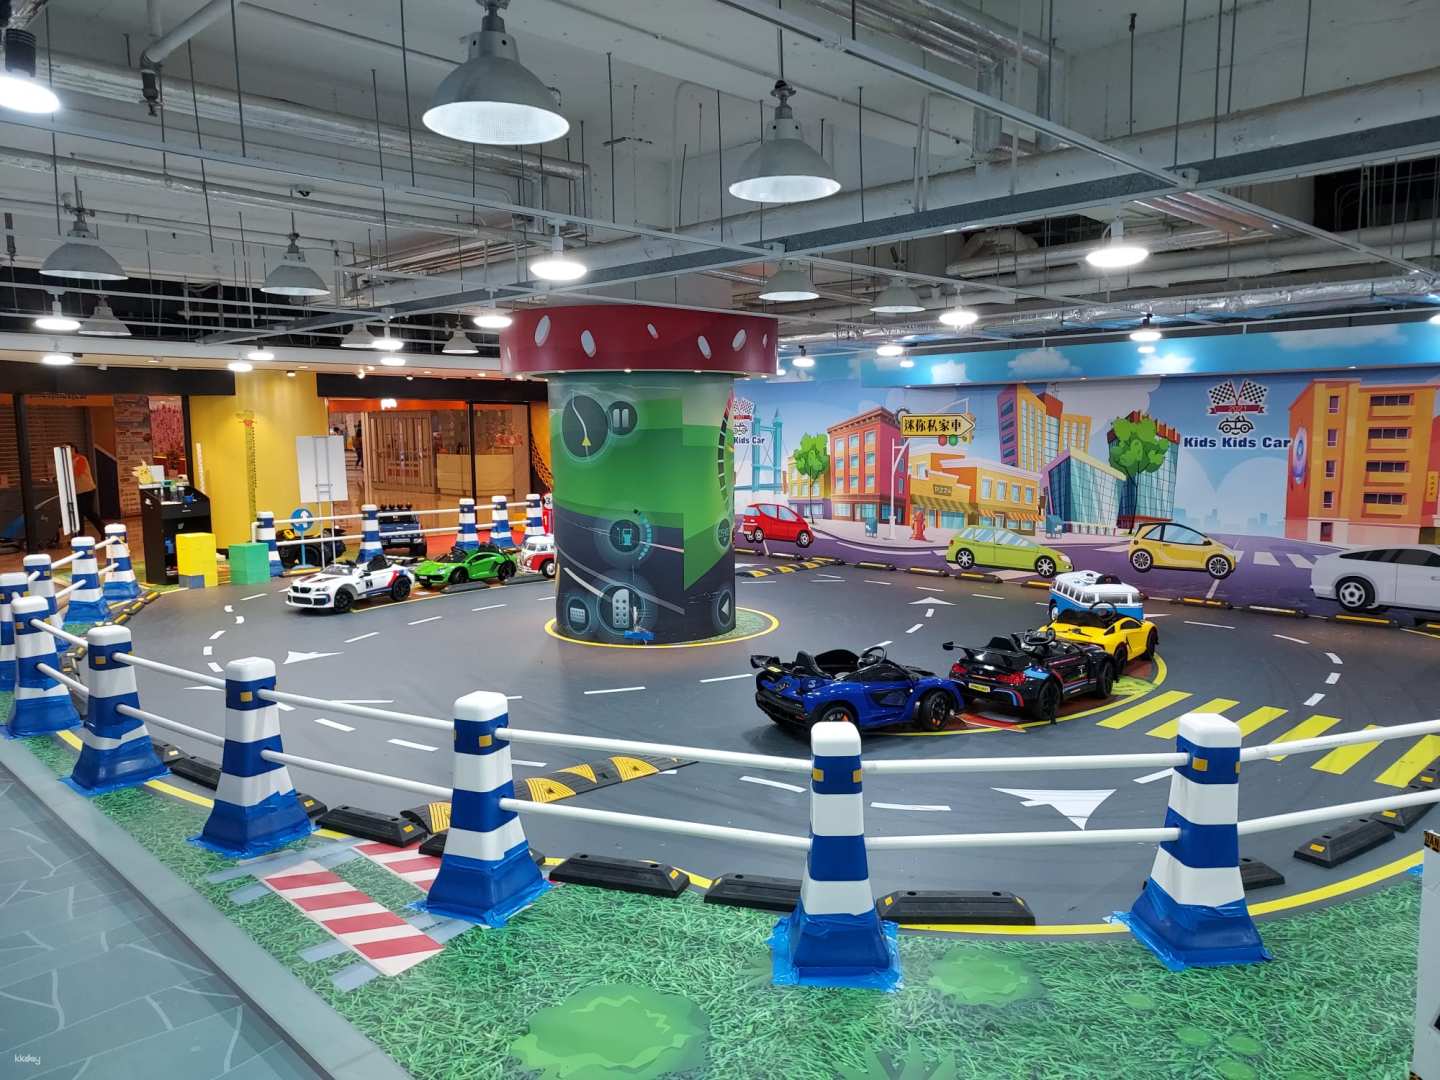 香港- Kids Kids Car | 兒童動靜皆宜天地套票| 迷你私家車&跳彈床&AR動感遊戲等多個玩樂專區